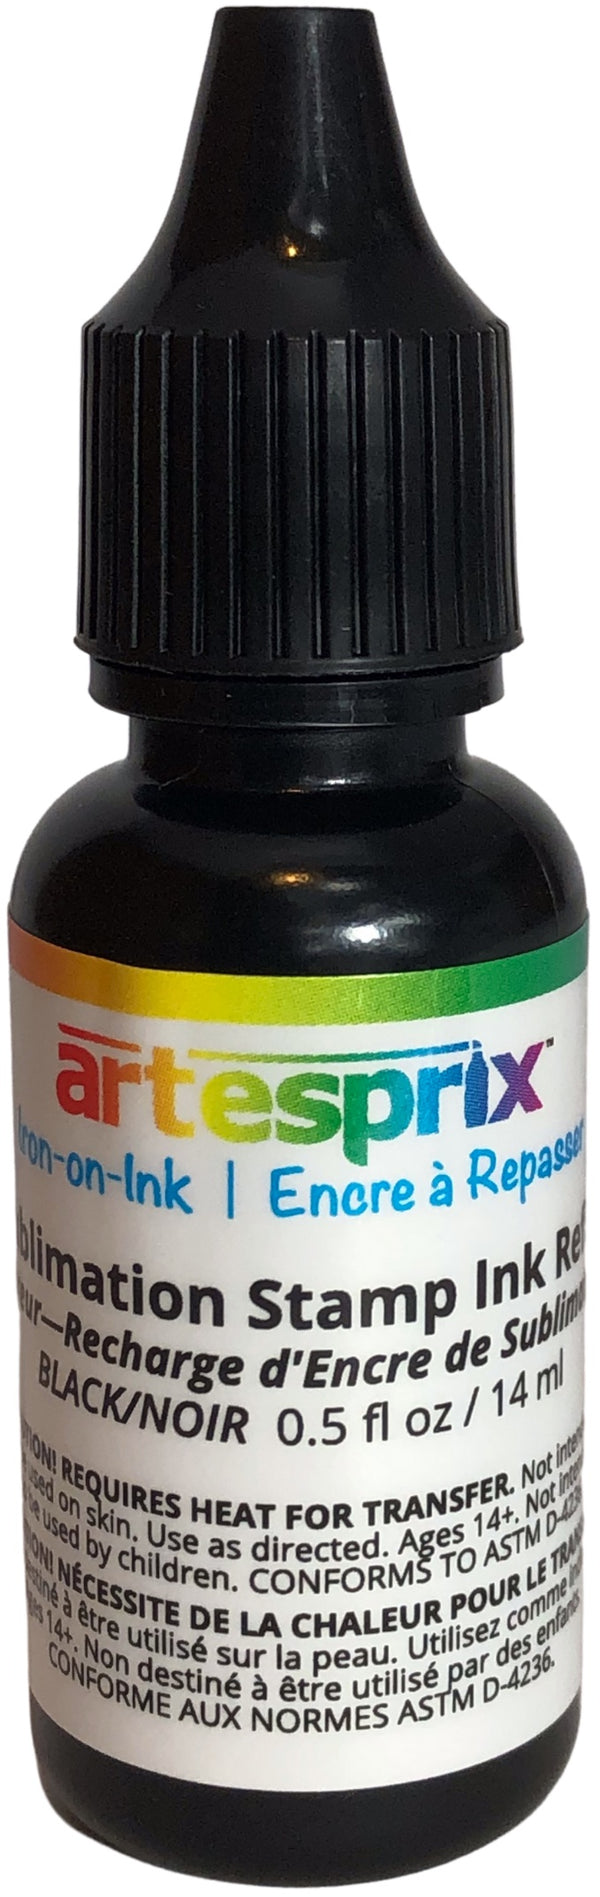 Artesprix Iron-On-Ink Sublimation Stamp Ink Refill - Black